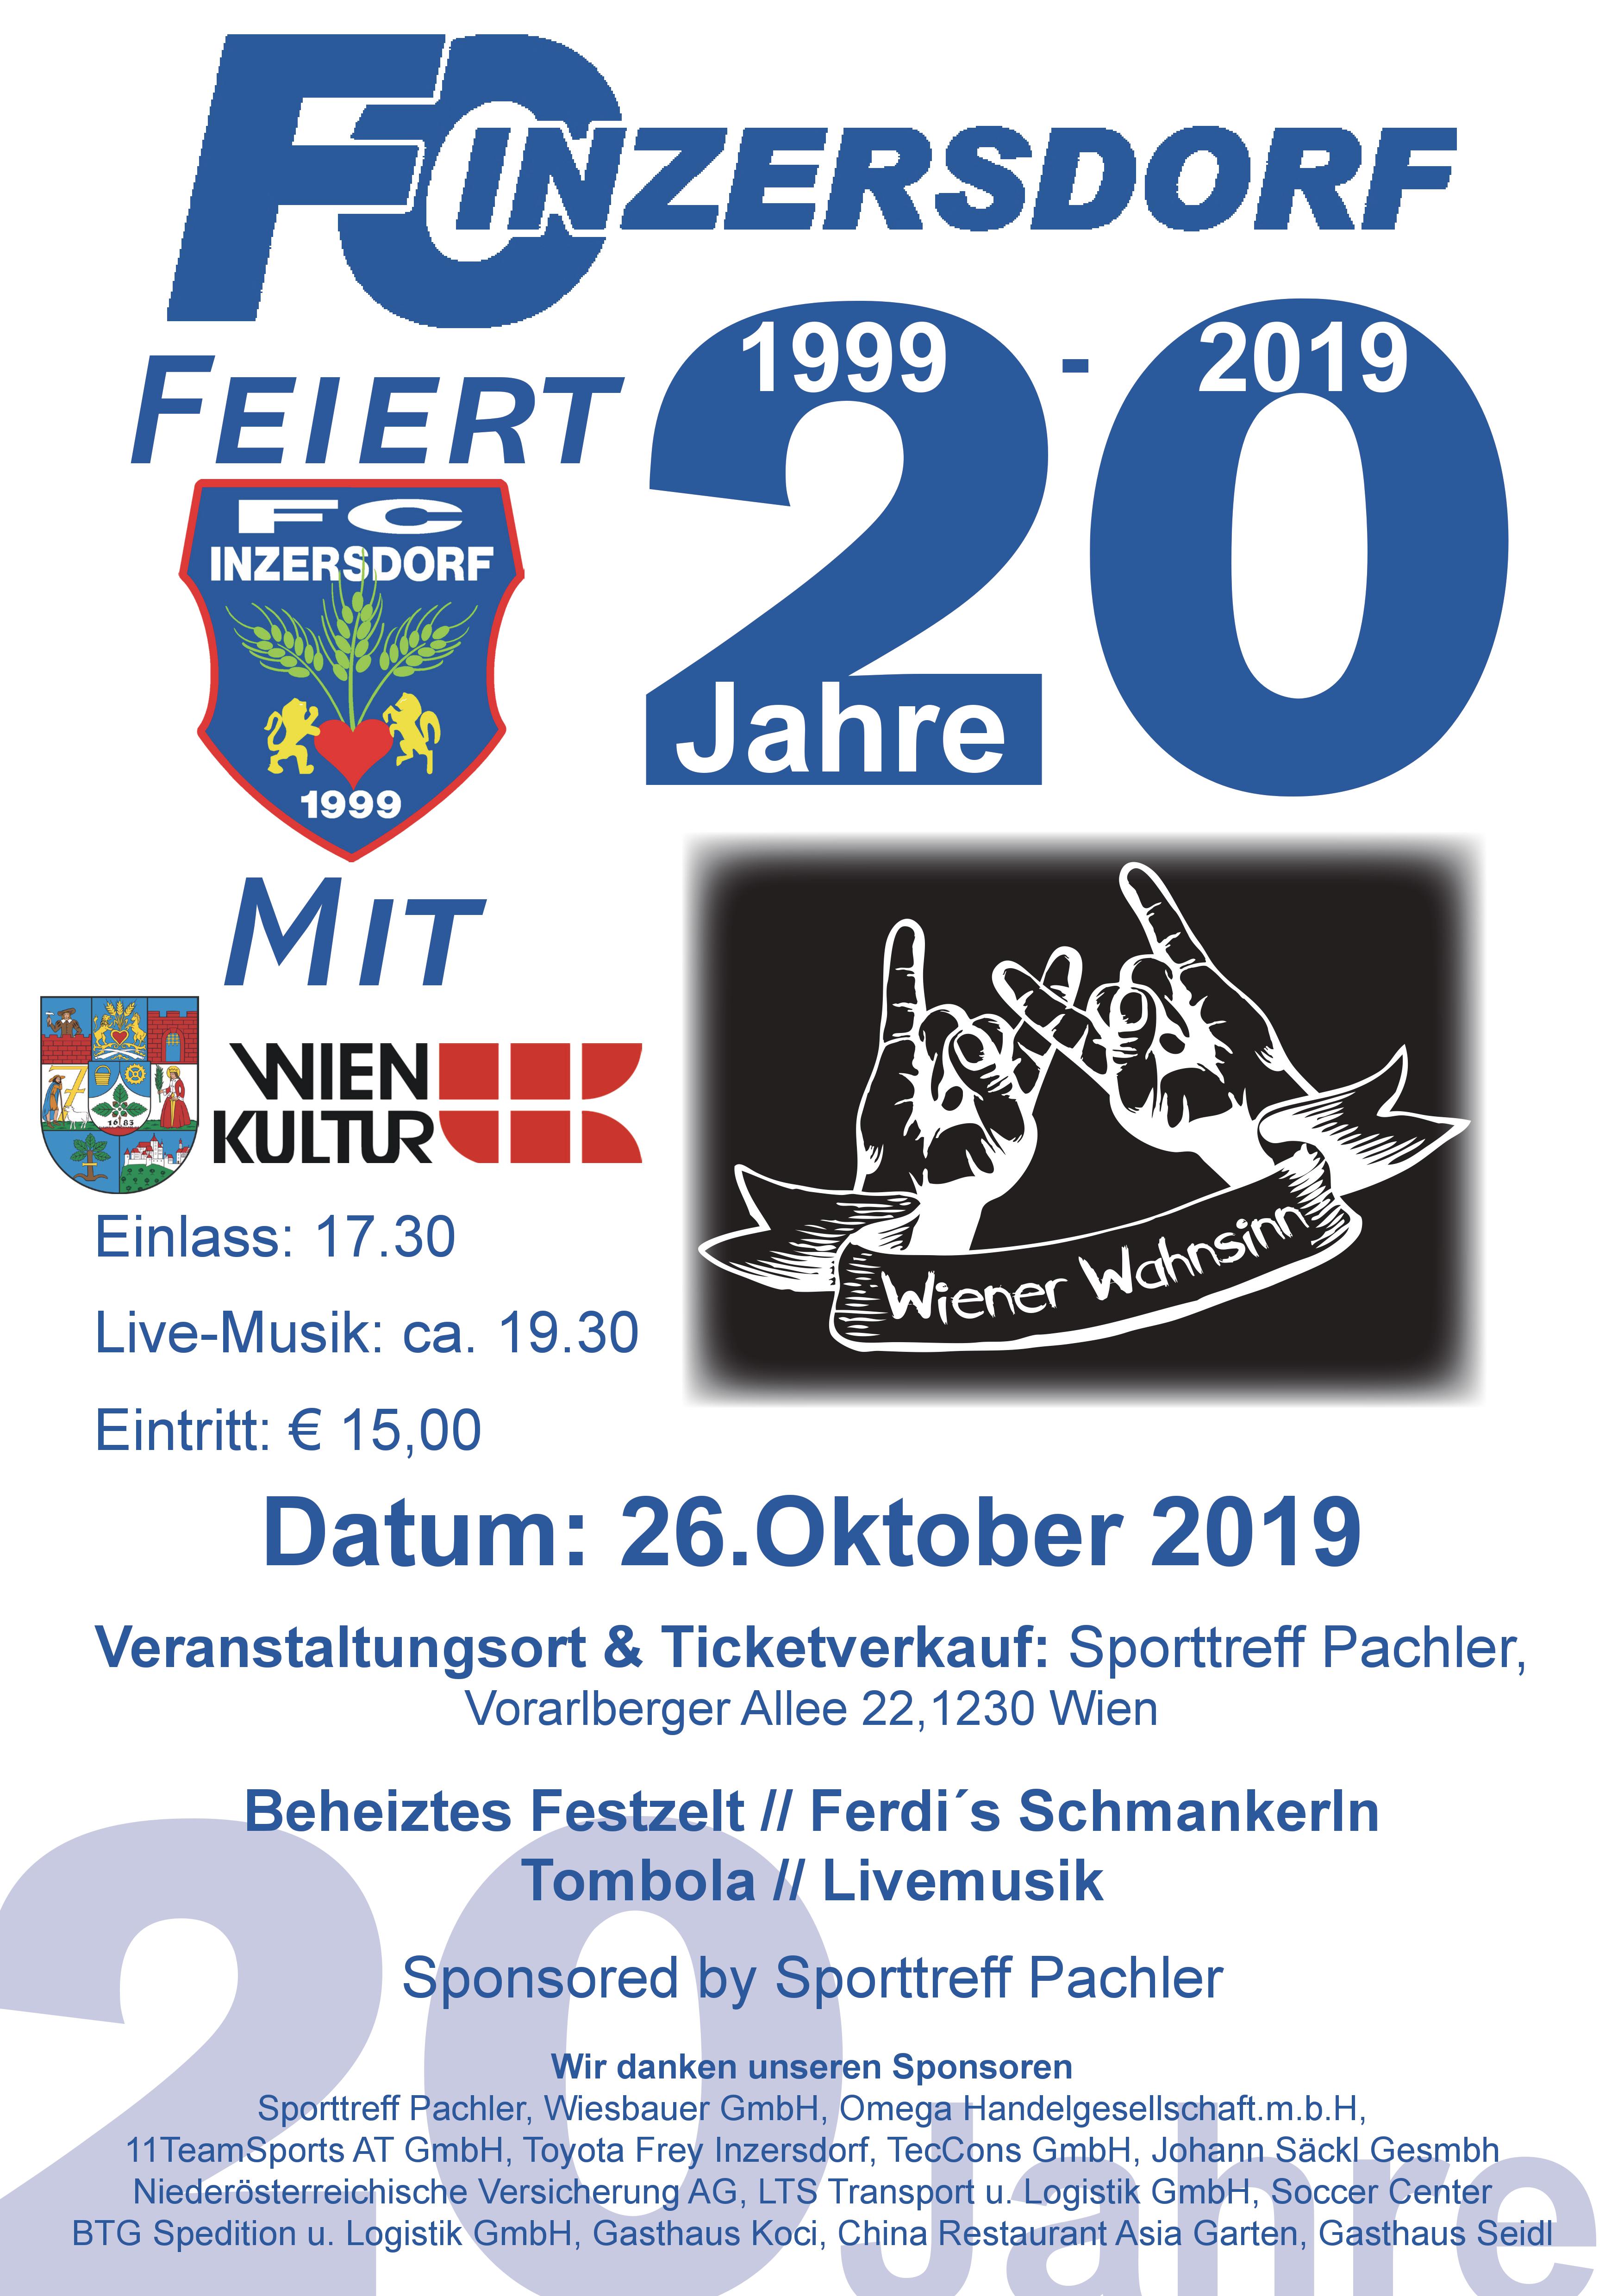 20 Jahre FC-Inzersdorf